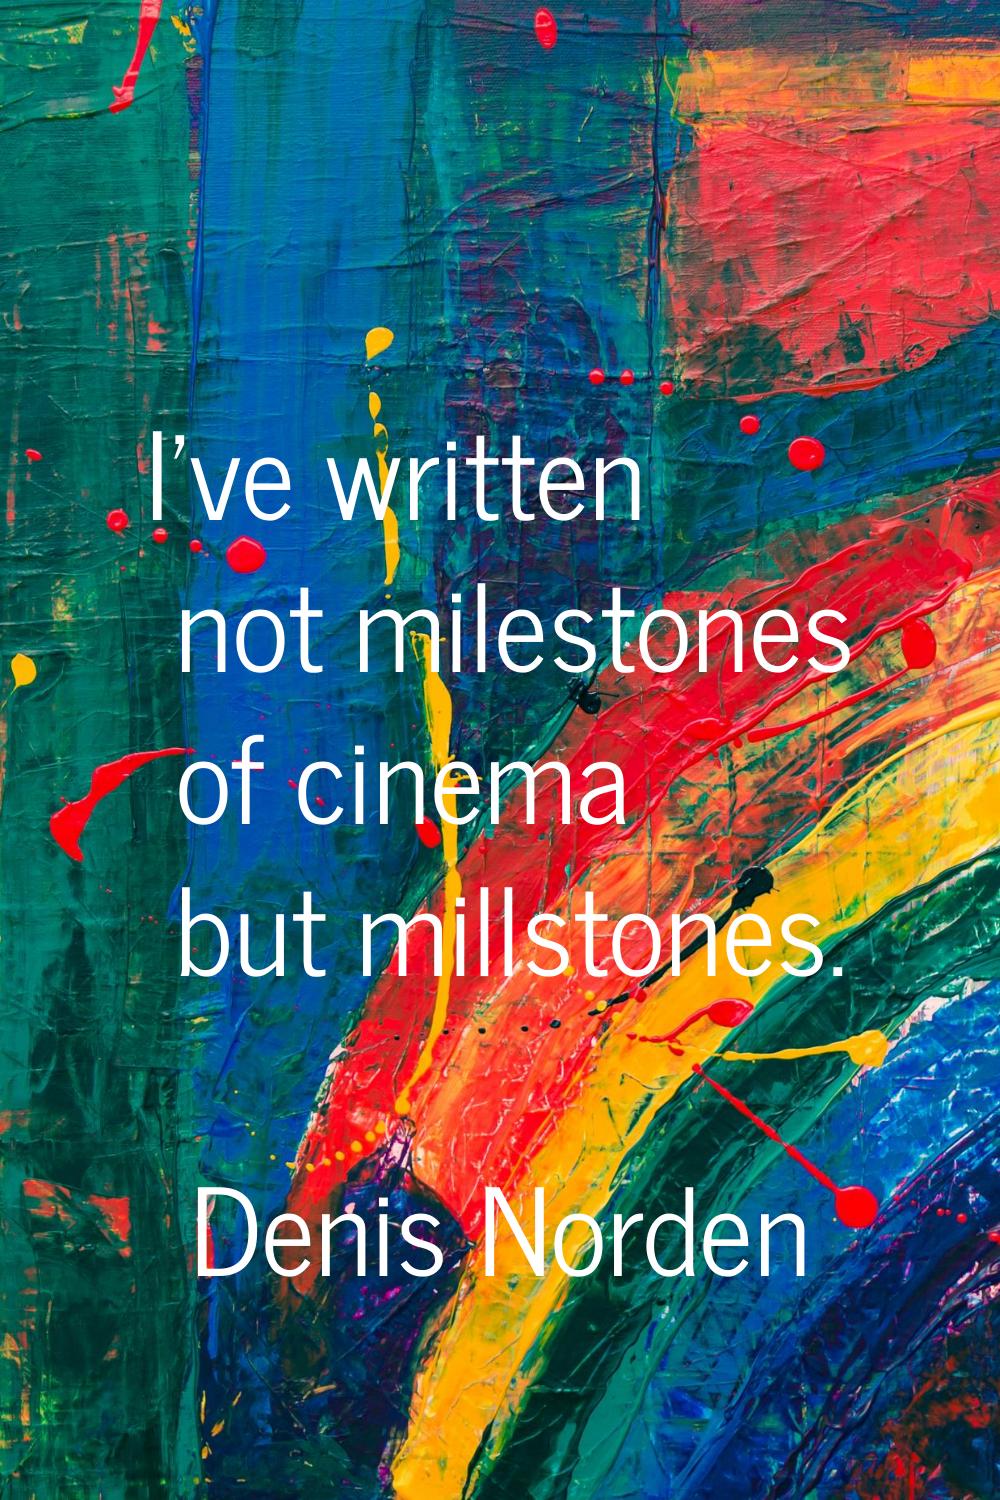 I've written not milestones of cinema but millstones.